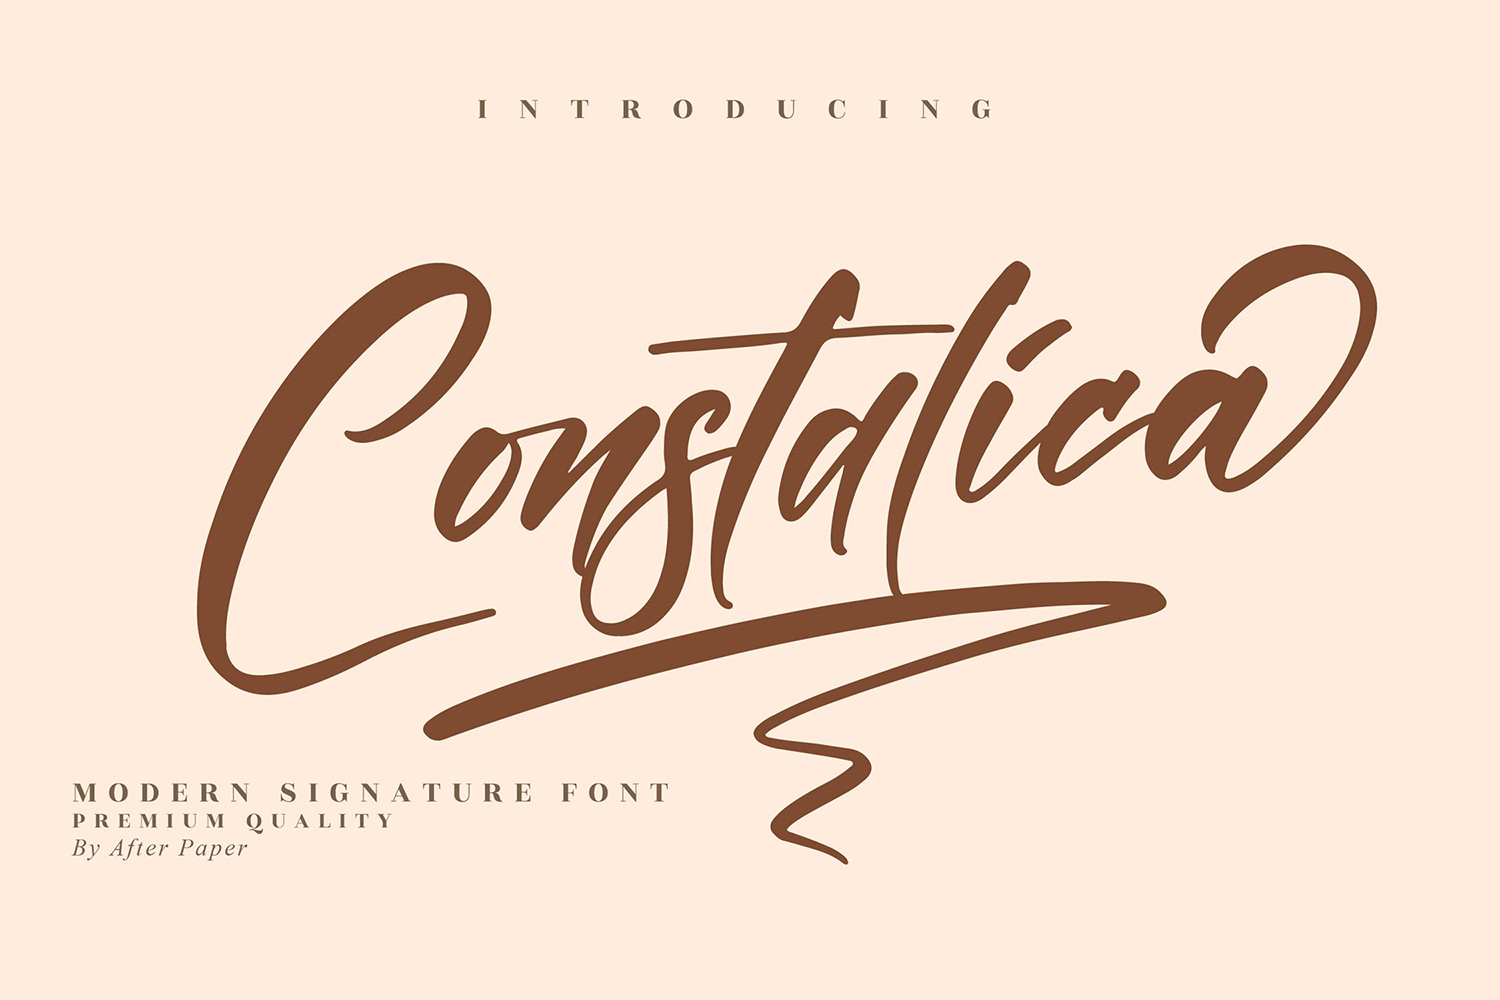 Constalica Free Font